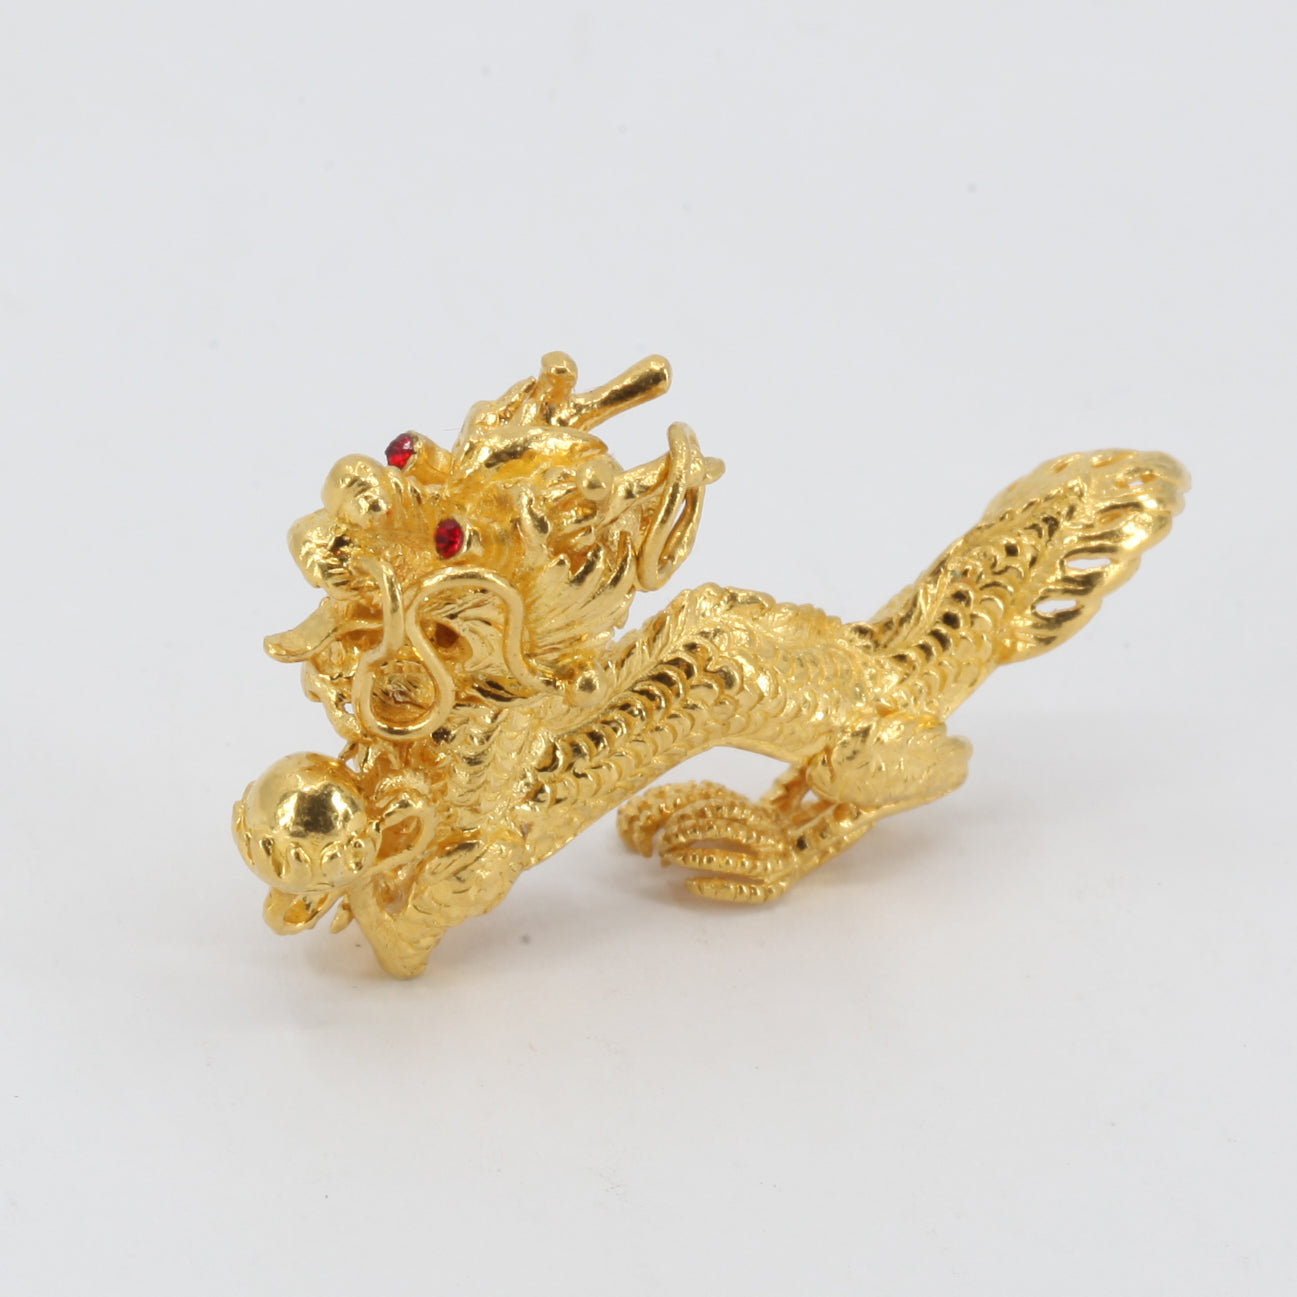 24K Solid Yellow Gold 3D Zodiac Dragon Pendant 23 Grams